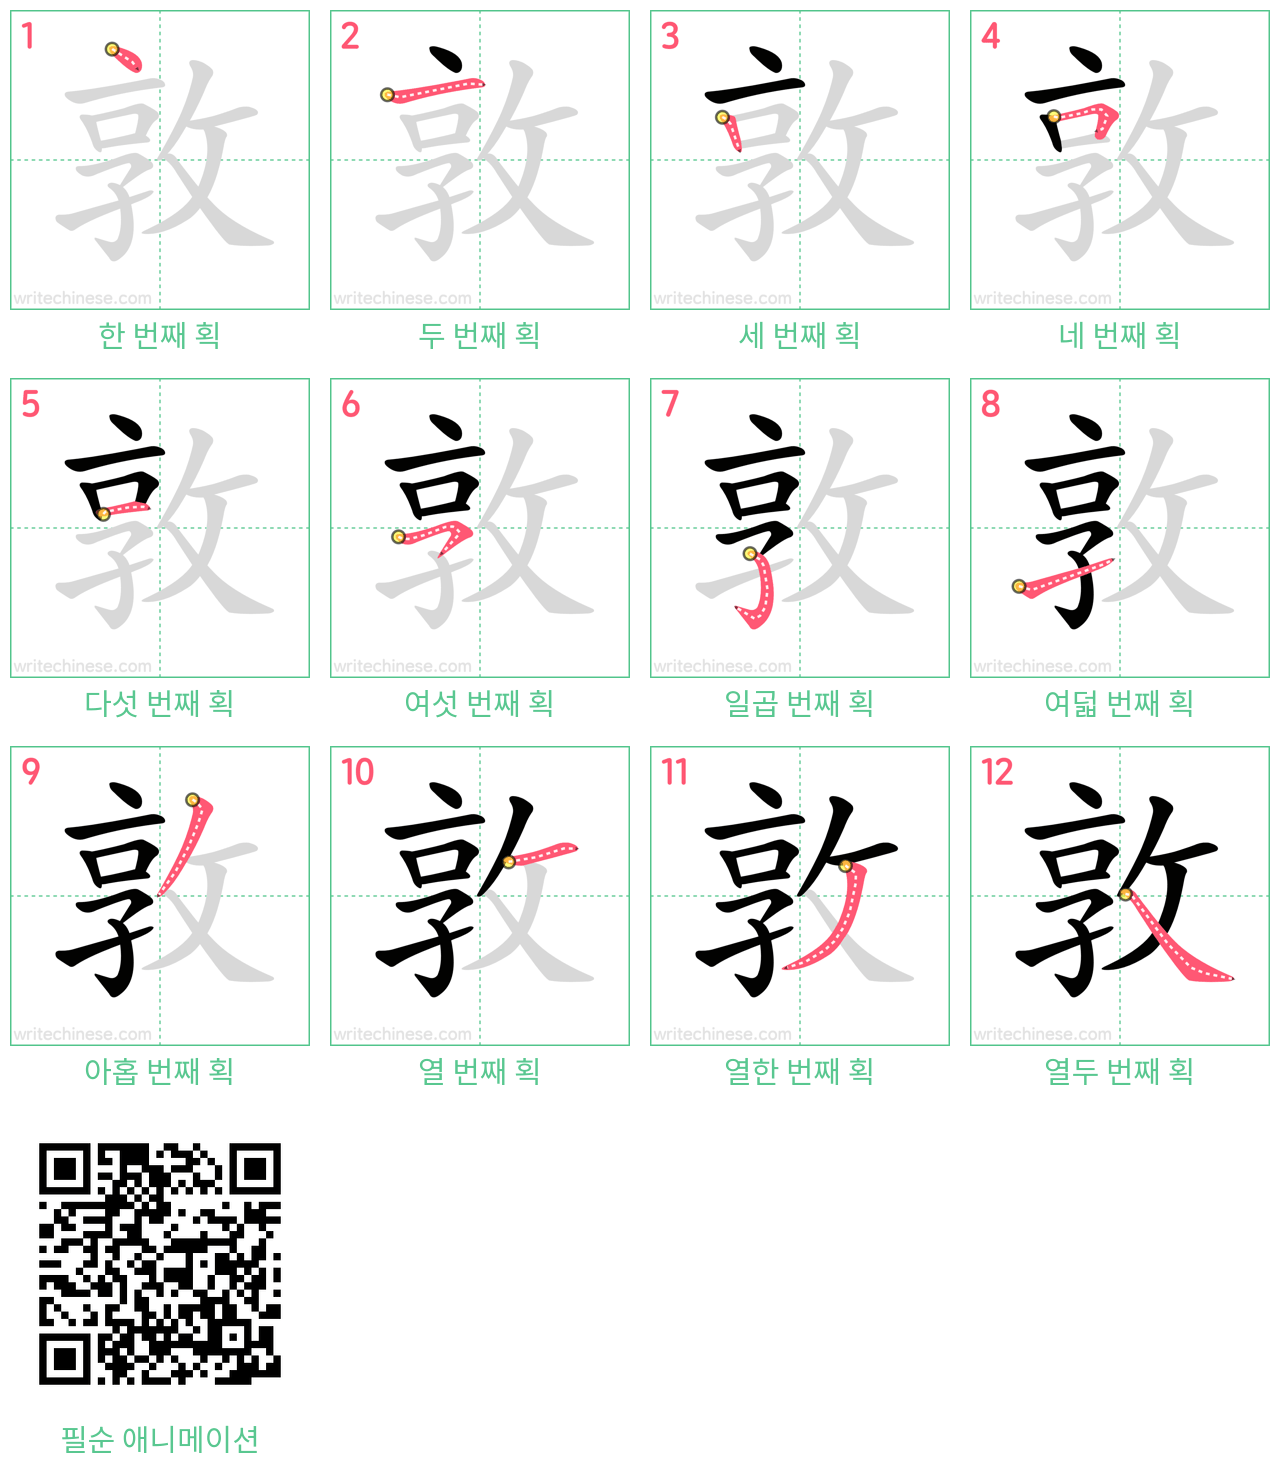 敦 step-by-step stroke order diagrams